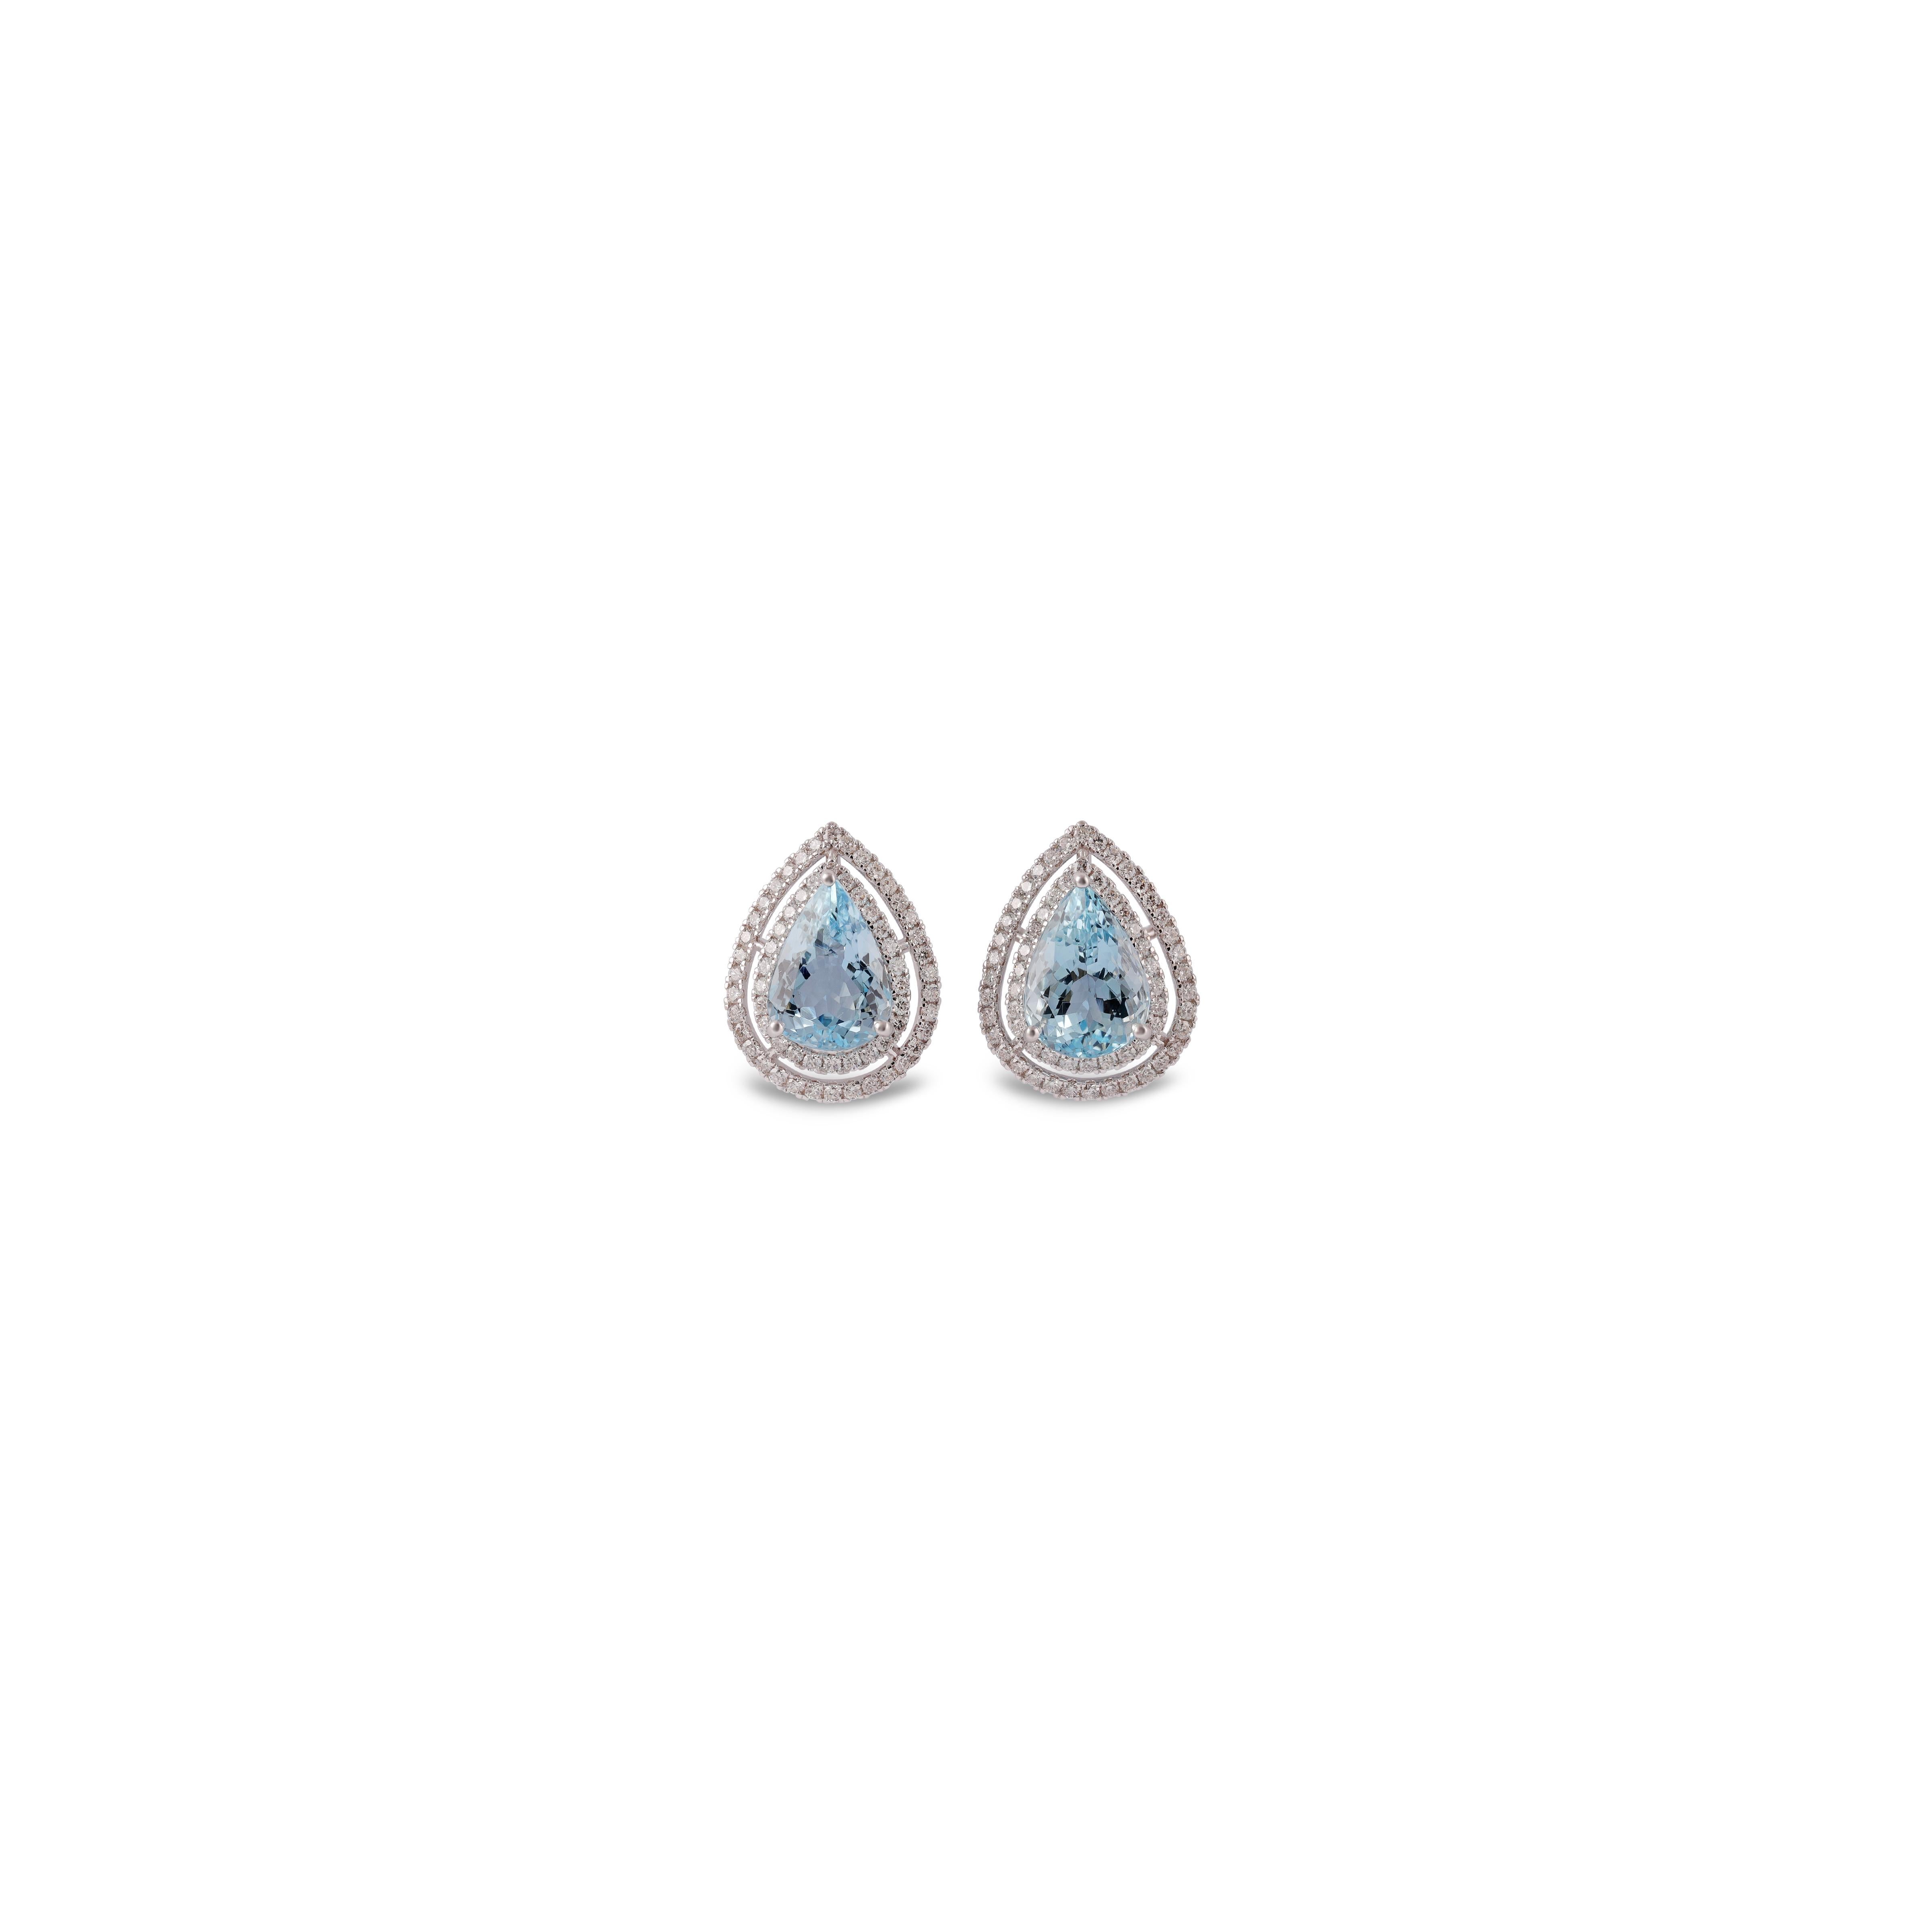 Ces élégantes boucles d'oreilles en or blanc 18 carats sont composées d'aigue-marine et de diamants, et de deux morceaux de diamants taillés en poire ou en goutte d'eau.  façonné  L'aigue-marine pèse 4,85 carats et est entourée de 124 diamants de